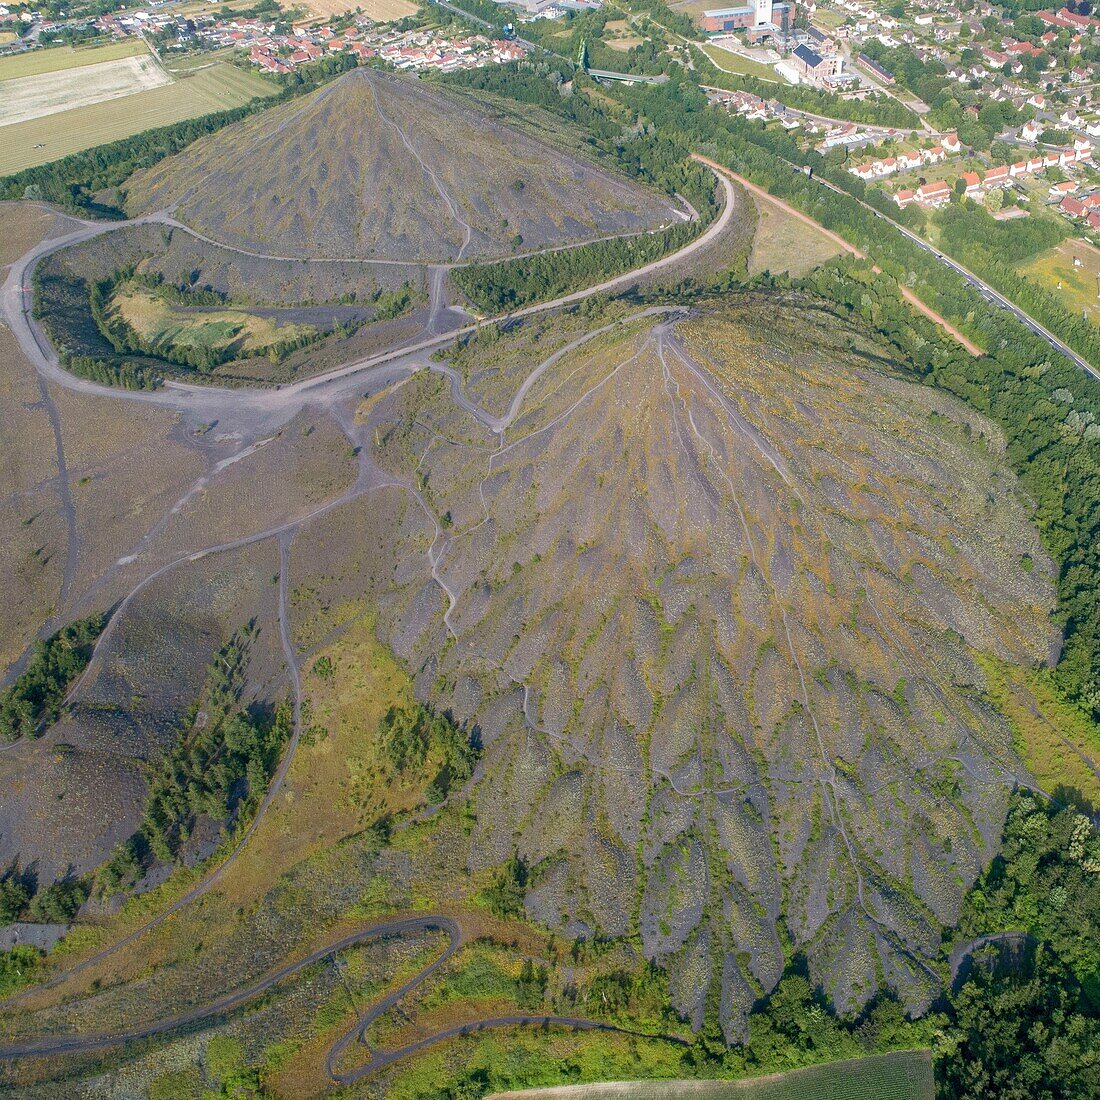 Frankreich, Pas de Calais, Loos en Gohelle, die Zwillingshalden der Grube 11/19, von der UNESCO zum Weltkulturerbe erklärtes Bergwerksgelände (Luftaufnahme)